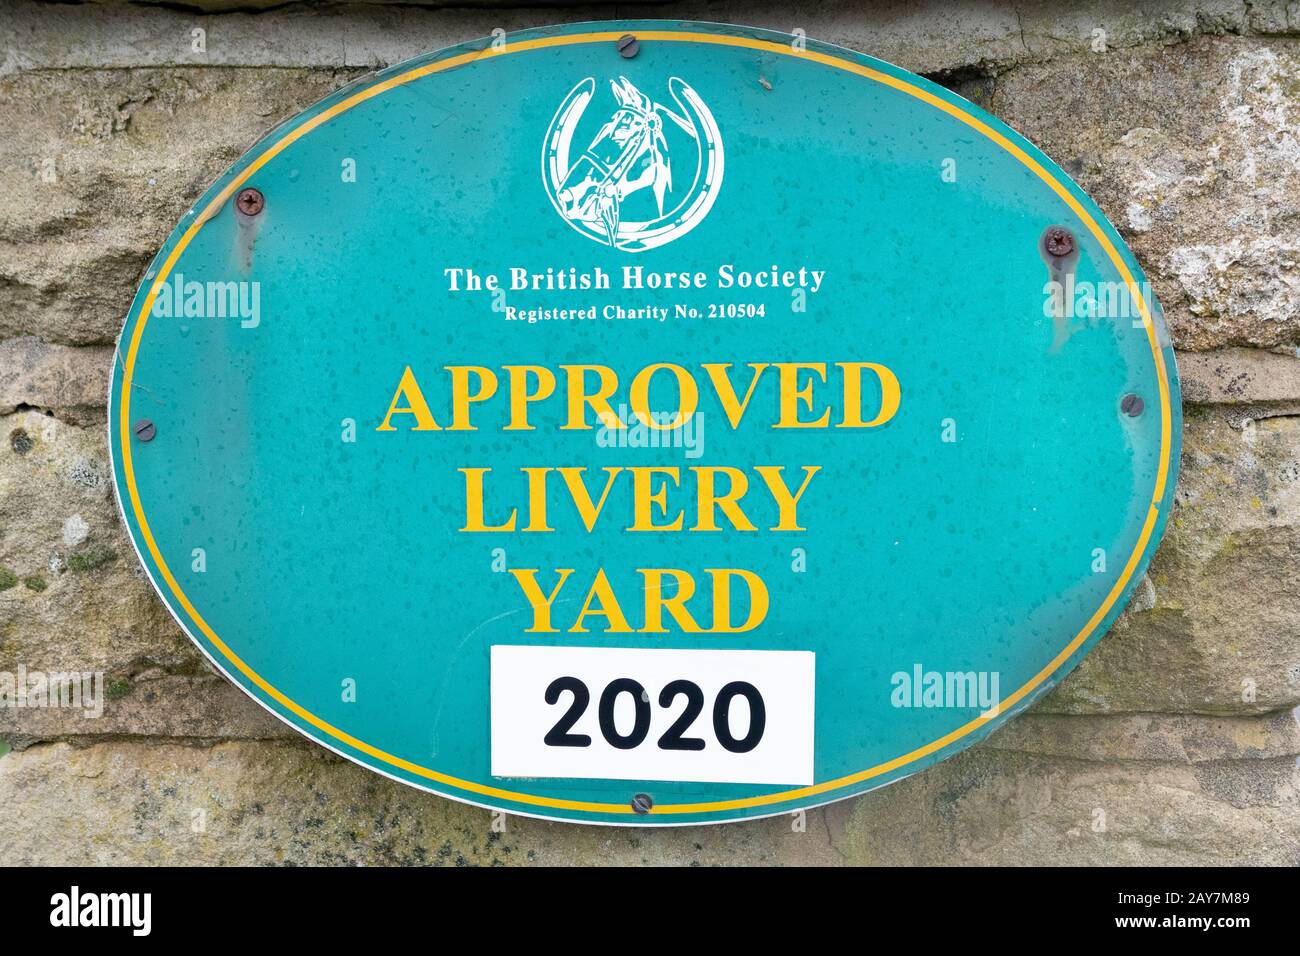 La British Horse Society aprobó Livery Yard 2020 signo, Inglaterra, Reino Unido Foto de stock